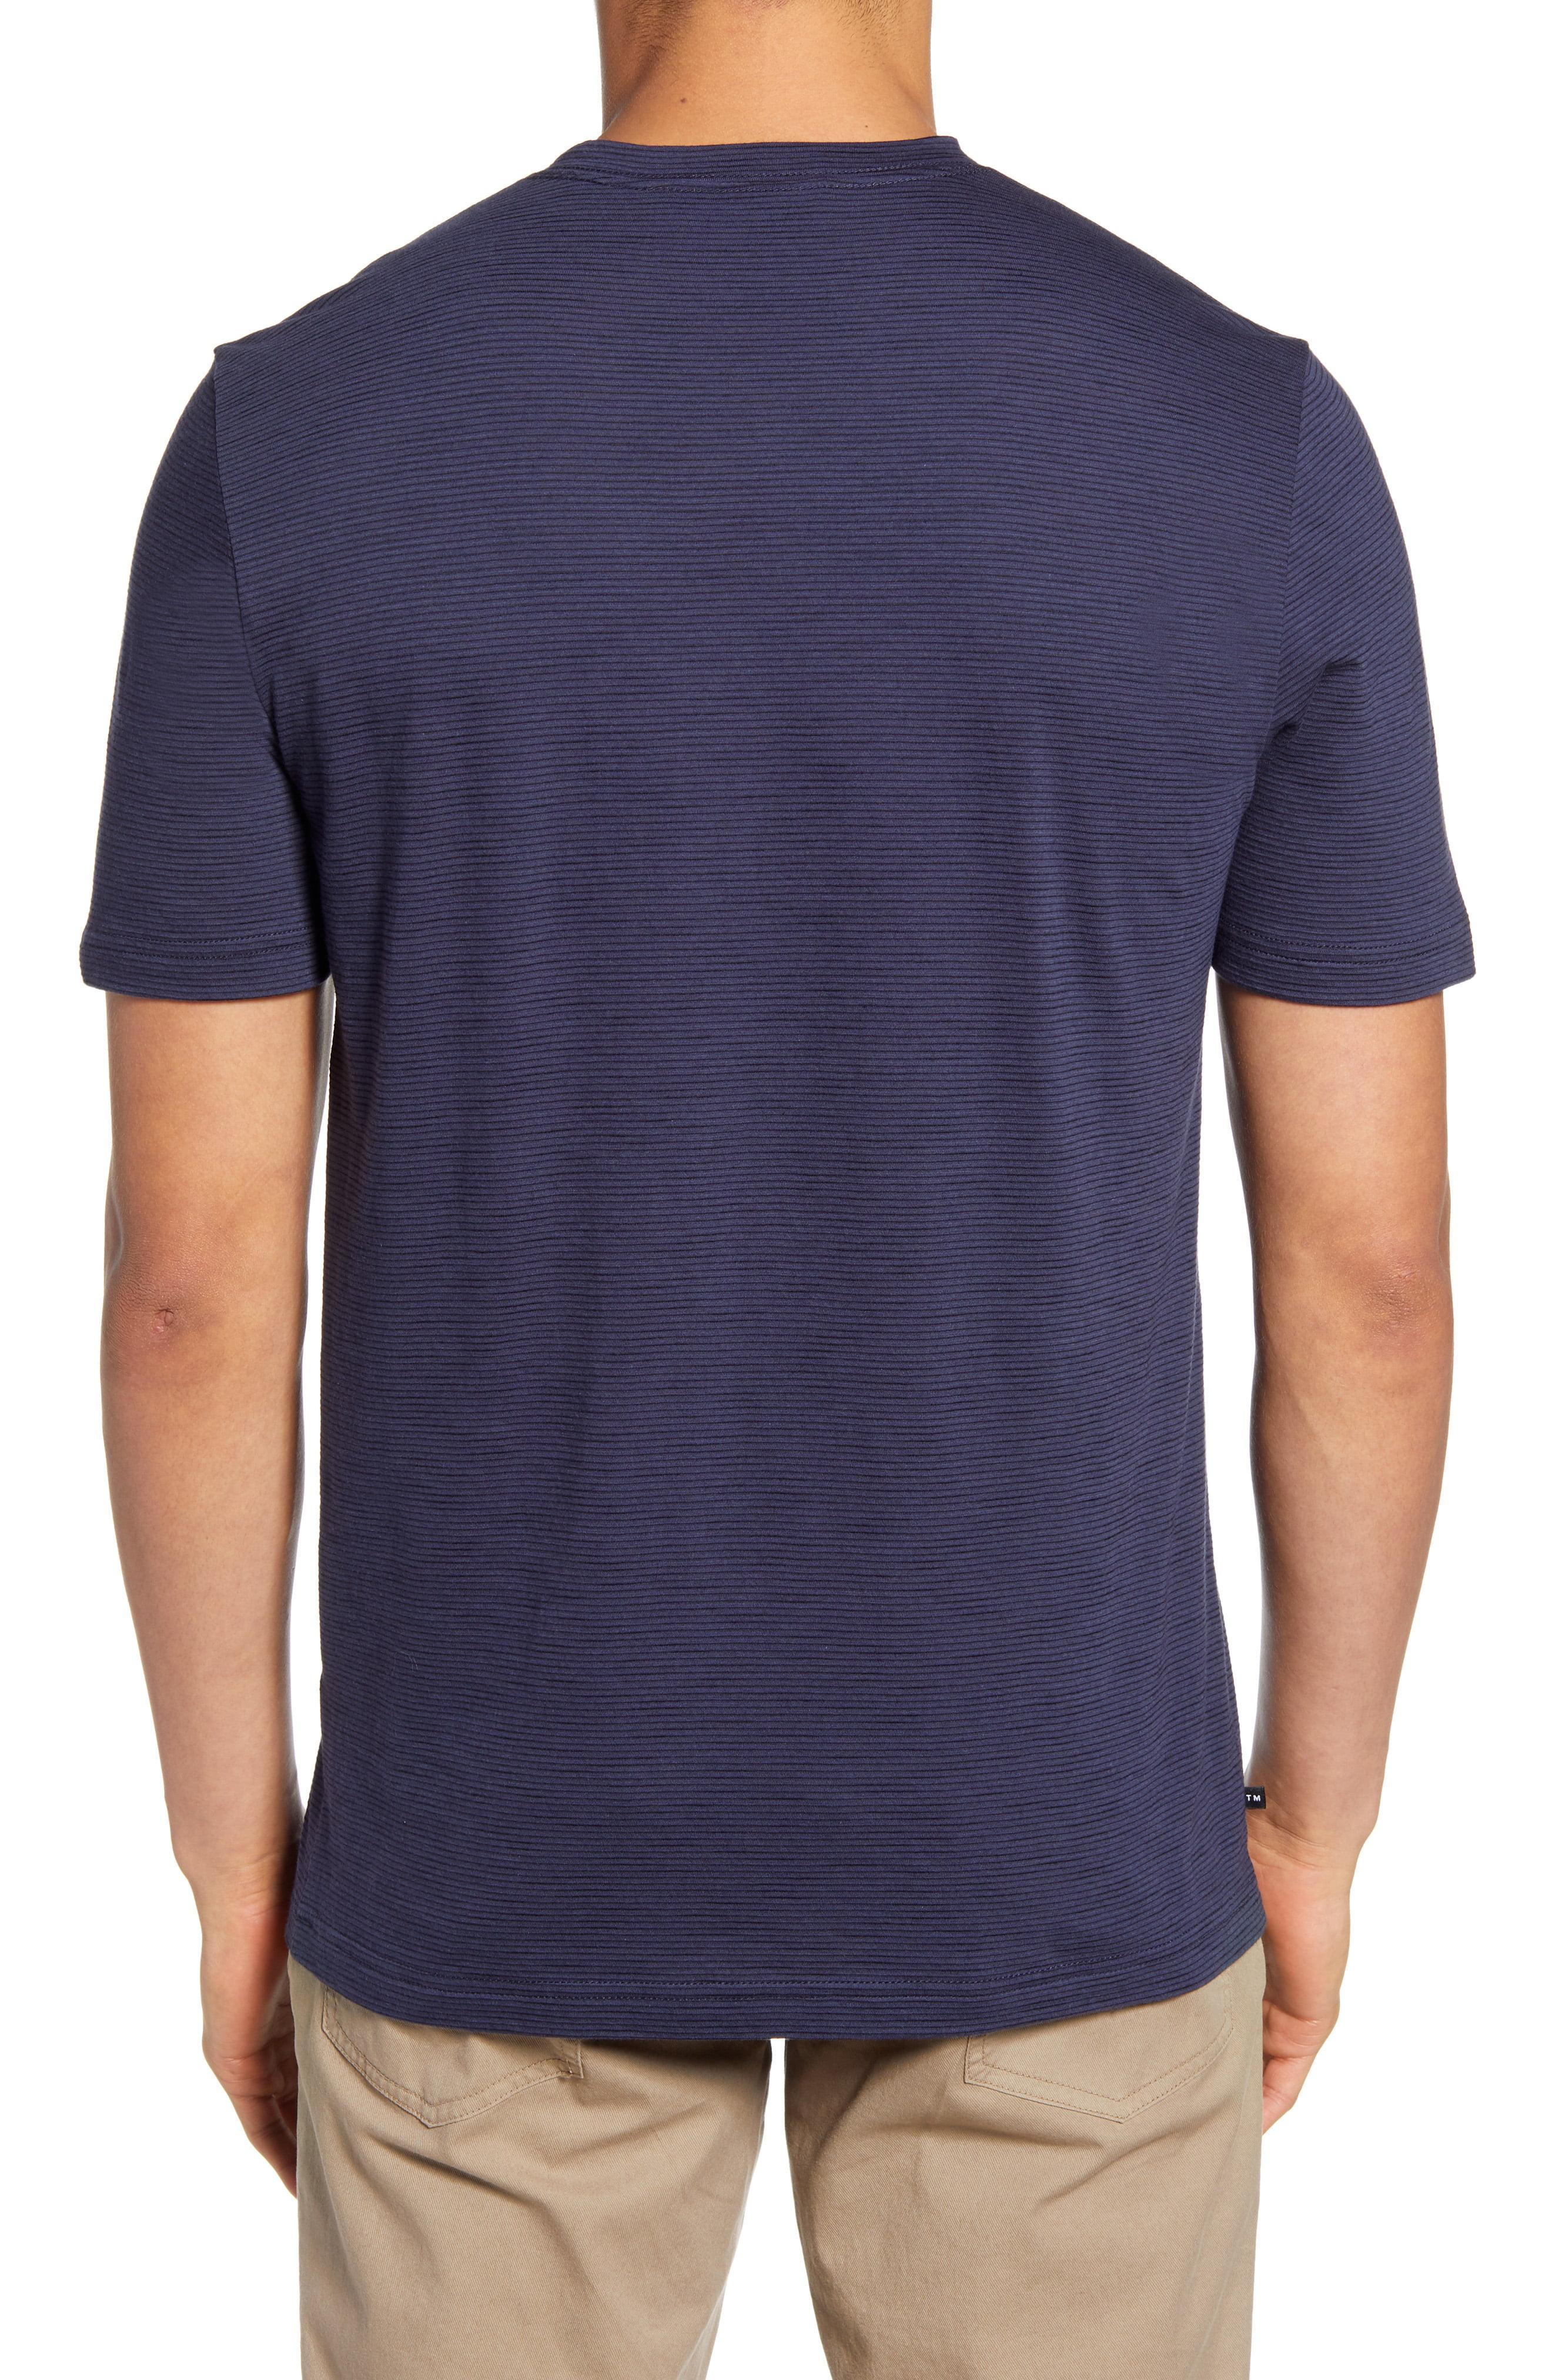 Travis Mathew Trumbull V-neck T-shirt in Blue for Men - Lyst